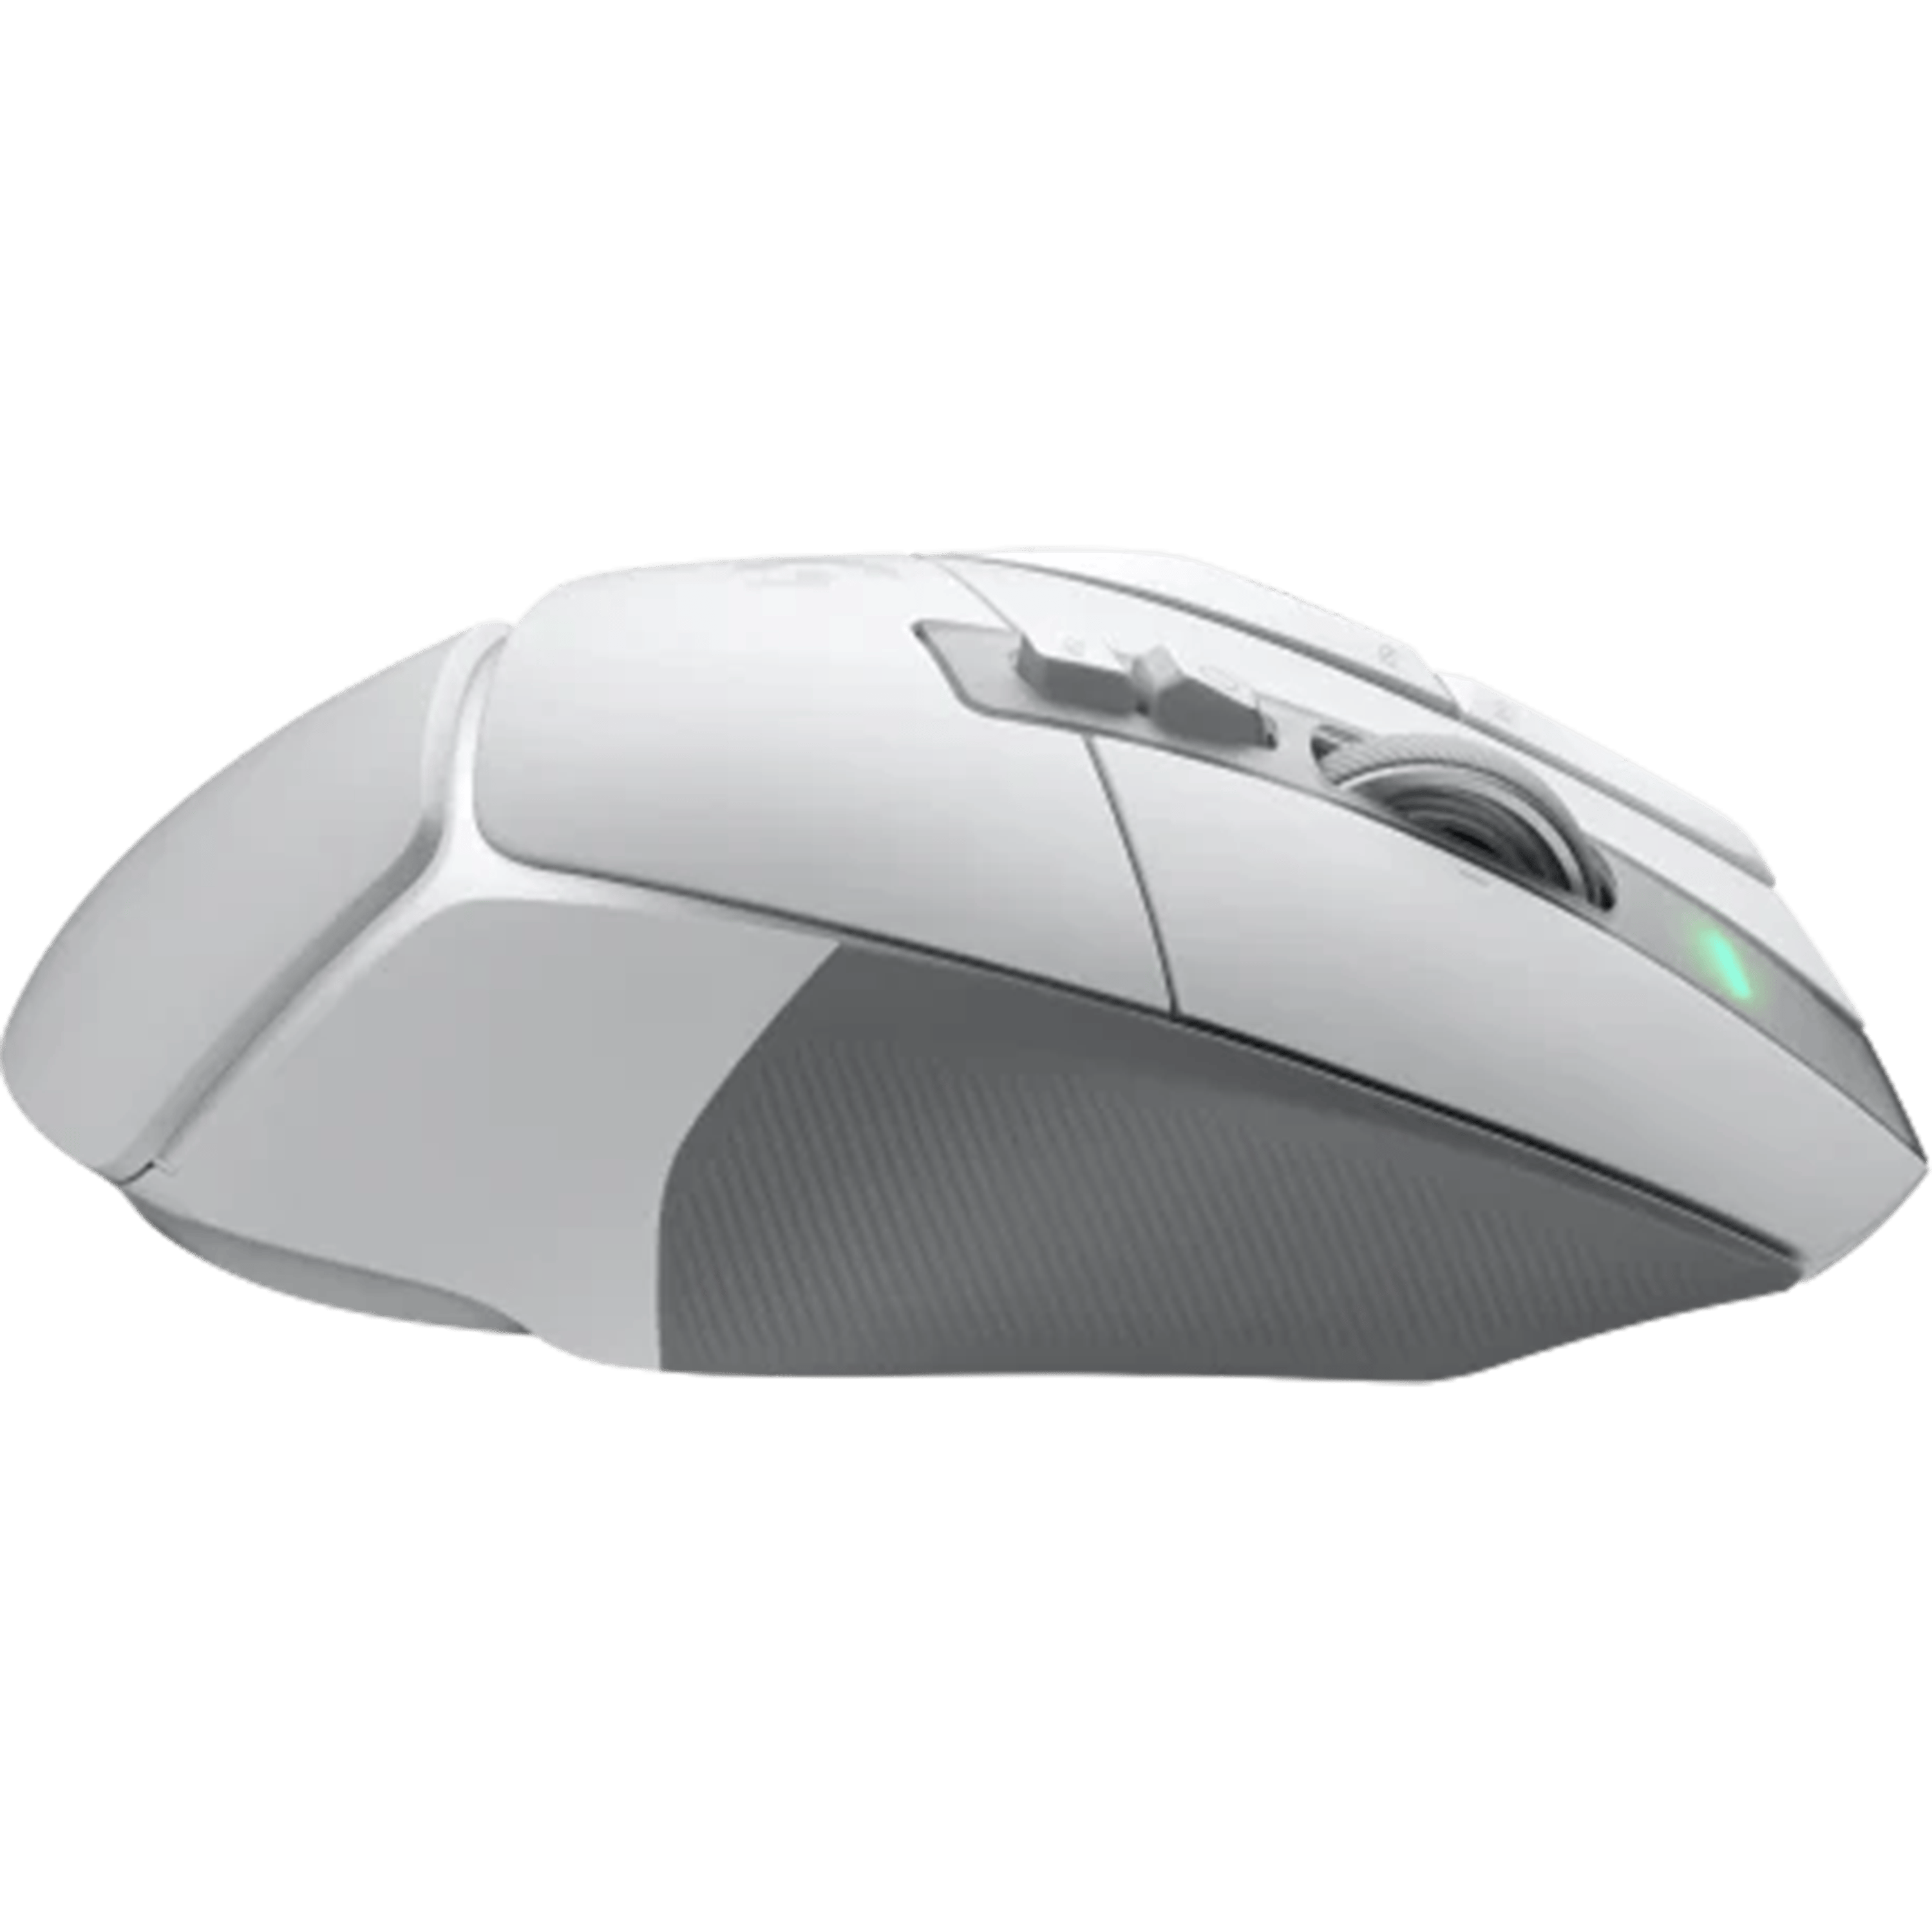 עכבר גיימינג אלחוטי Logitech G502 X LightSpeed - צבע לבן שנתיים אחריות ע